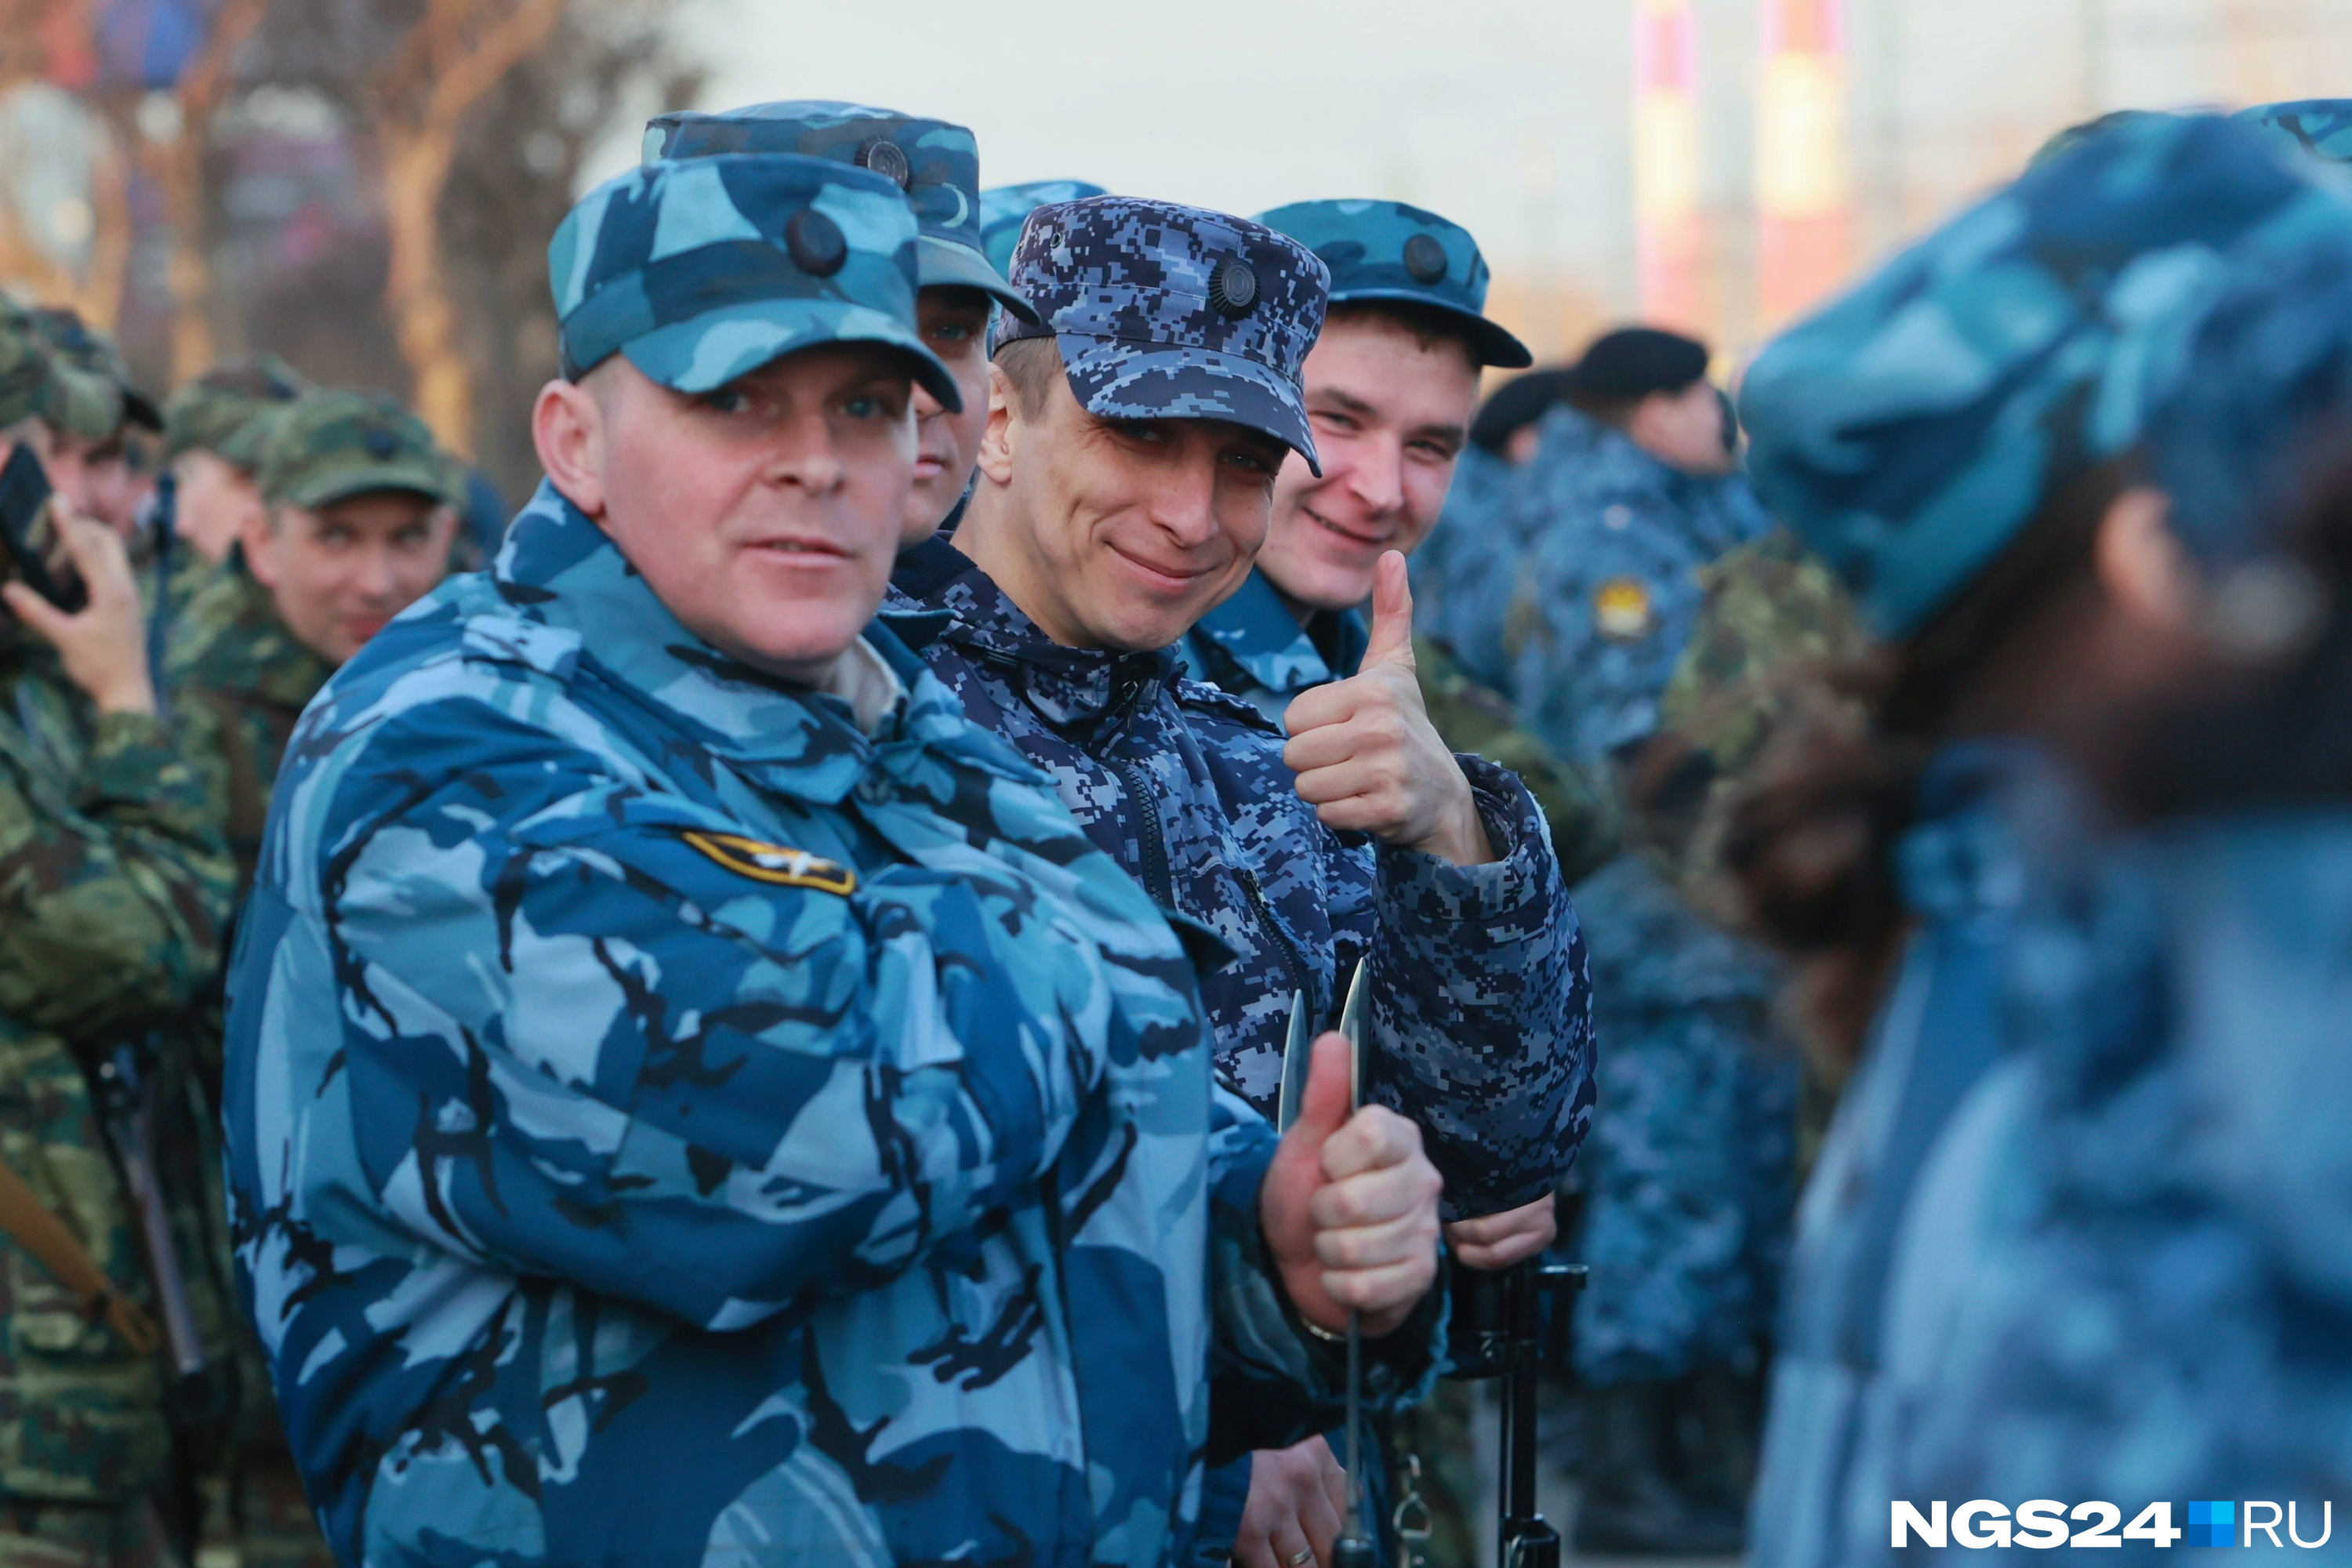 В Красноярске отрепетировали Парад Победы. Смотрим фоторепортаж о том, как это было